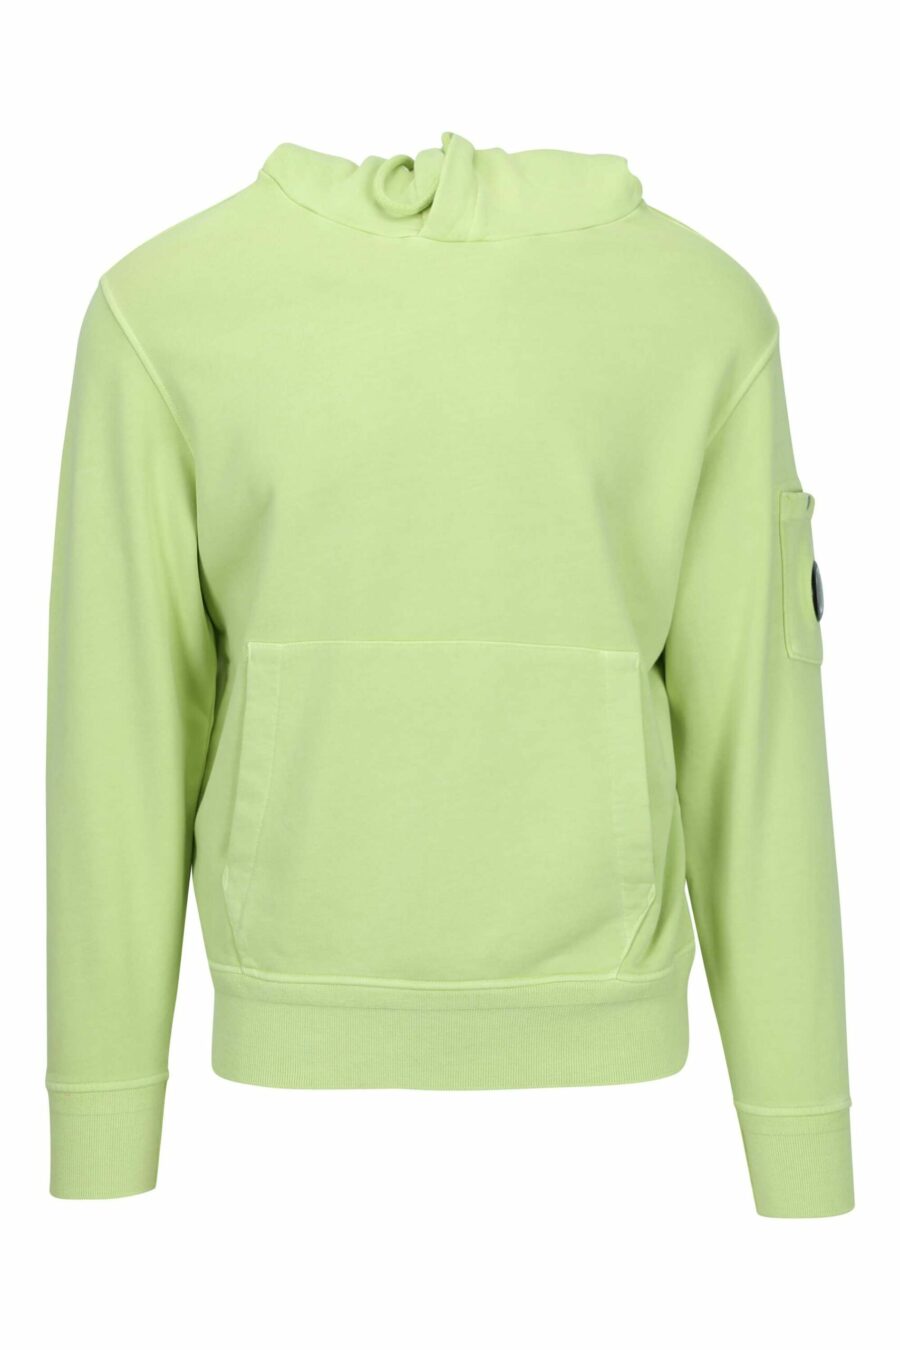 Sweat à capuche vert clair avec pochette pour lentille à logo miniature - 7620943677225 scaled